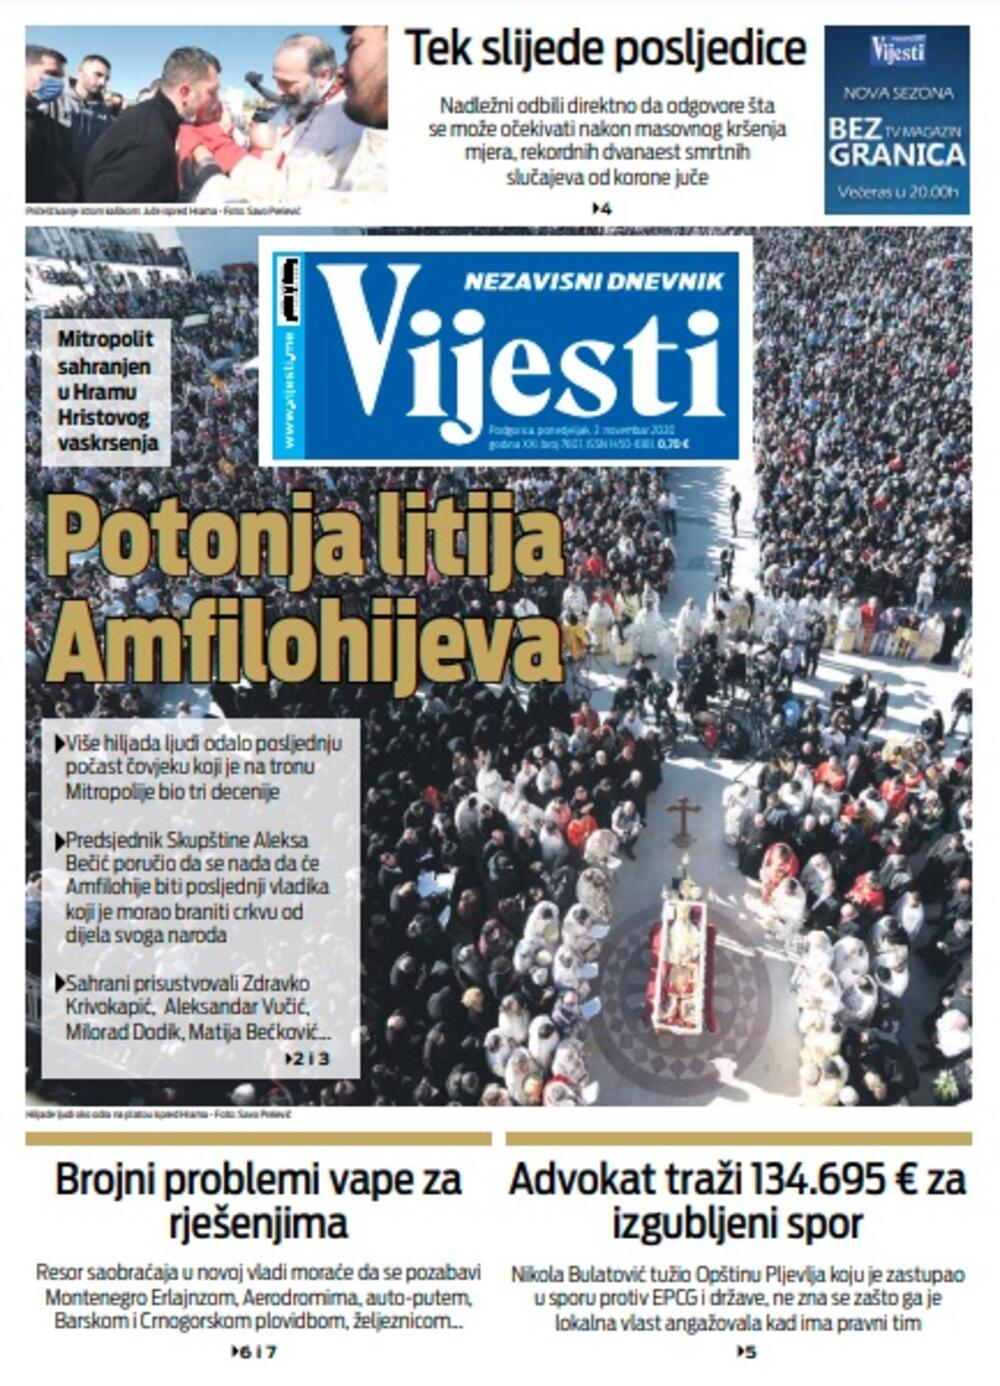 Naslovna strana "Vijesti" za ponedjeljak 2. novembar 2020. godine, Foto: Vijesti